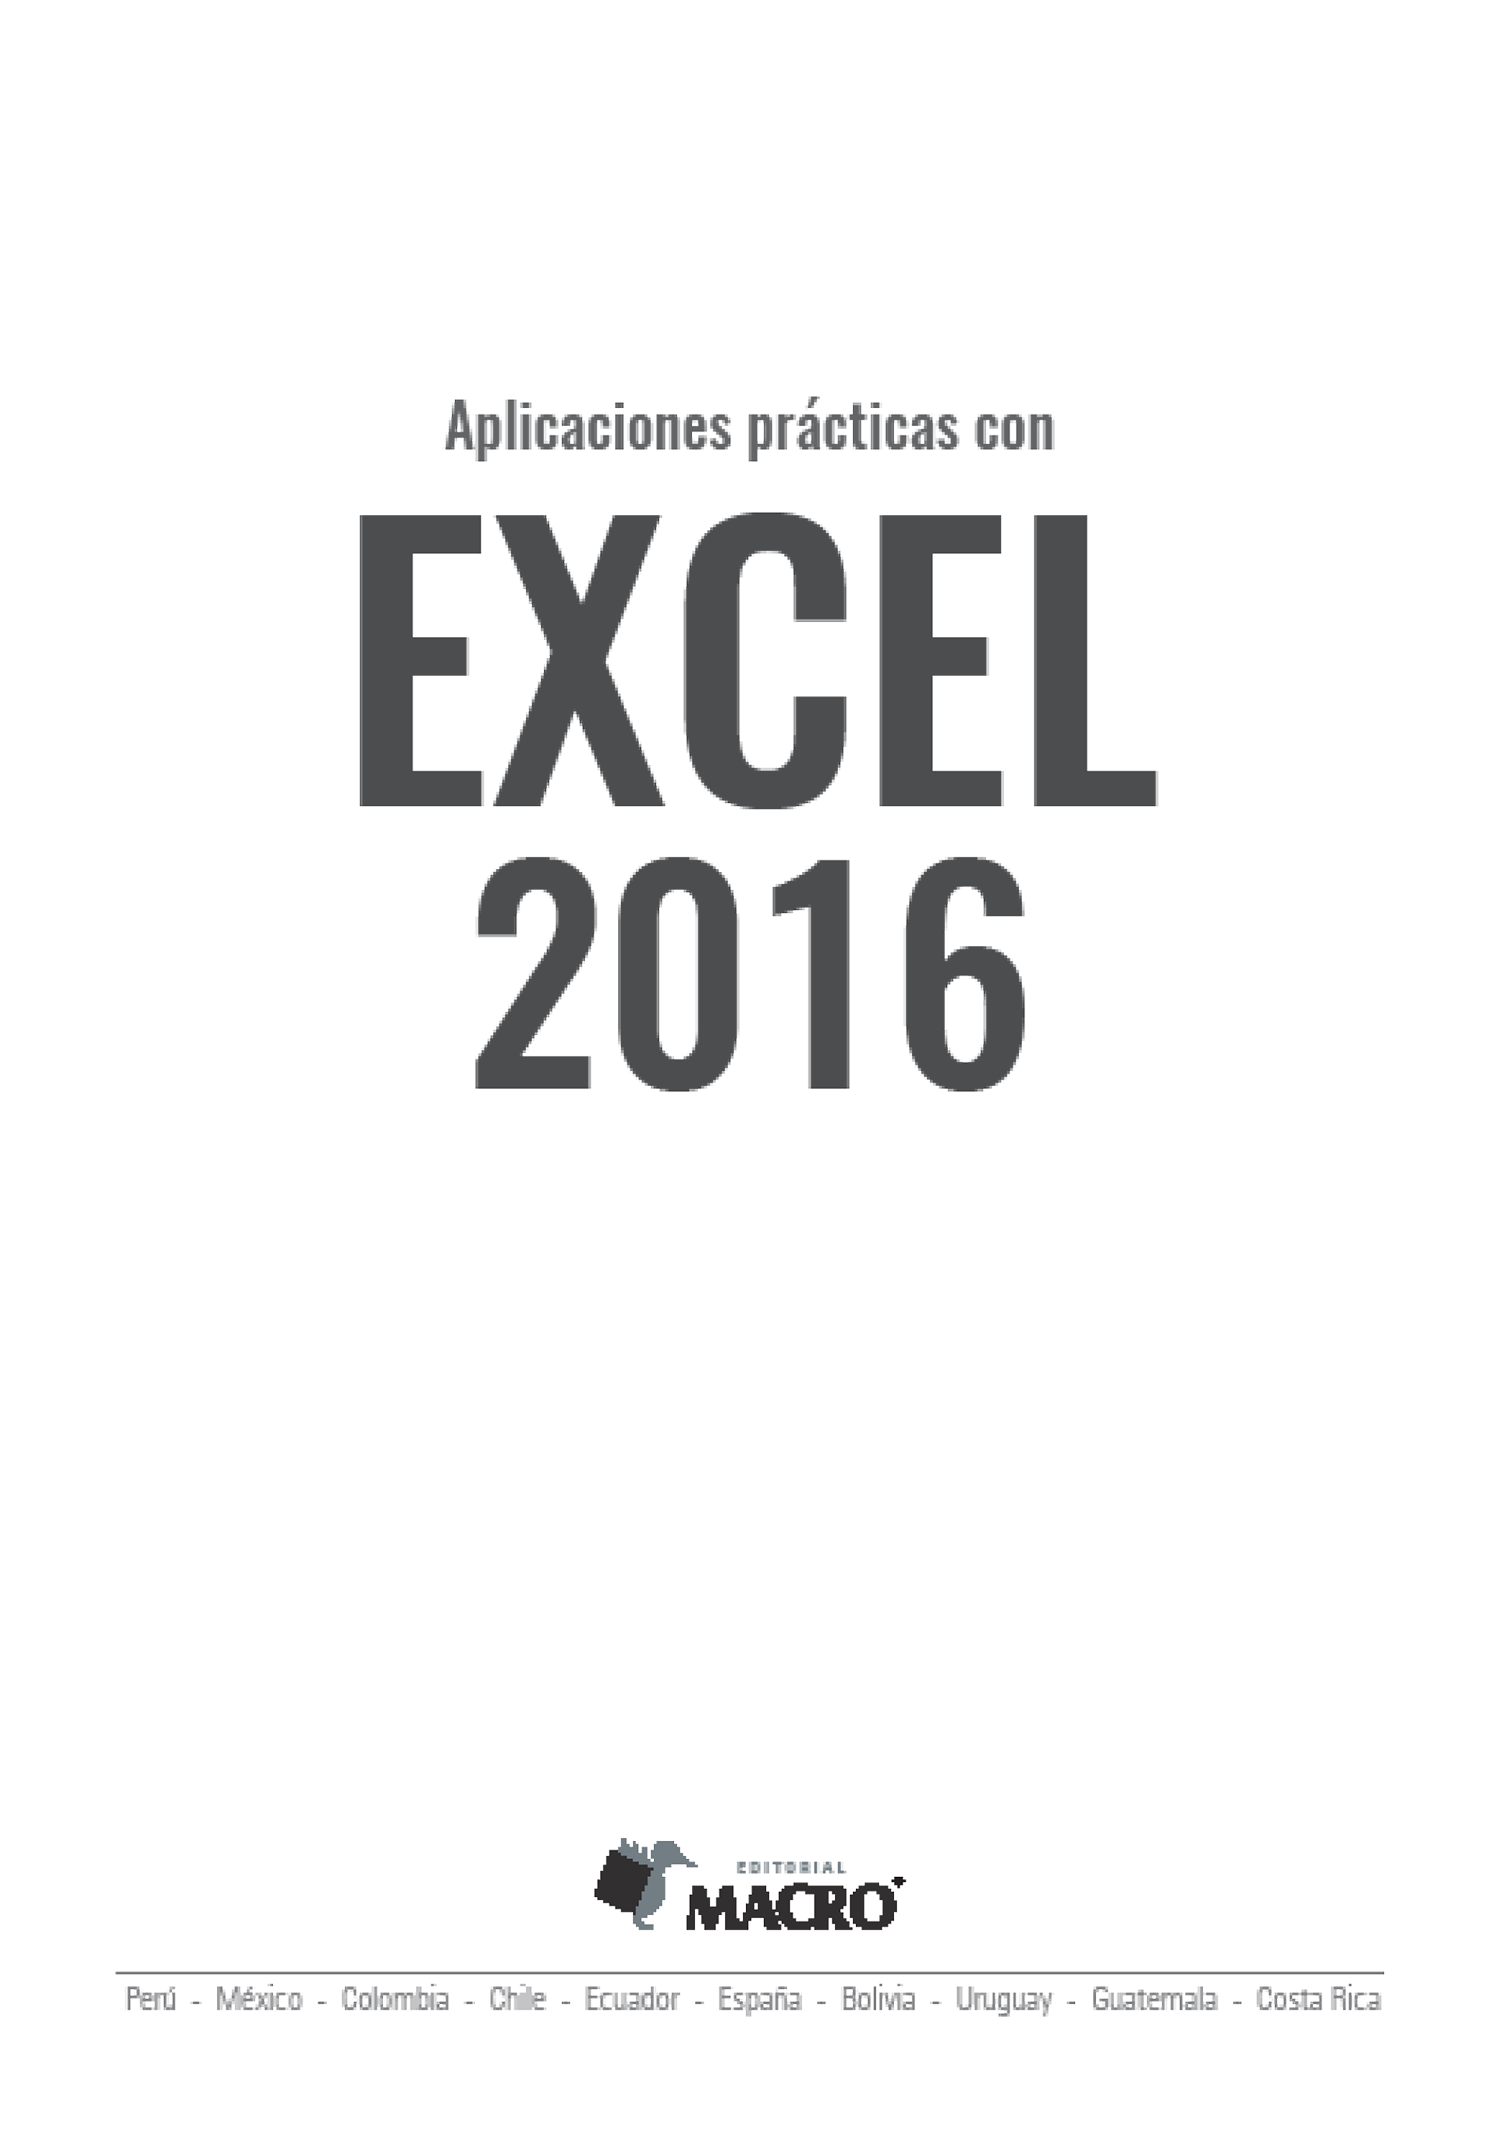 Aplicaciones prácticas con Excel 2016 Autor Johnny Pacheco Contreras - photo 3